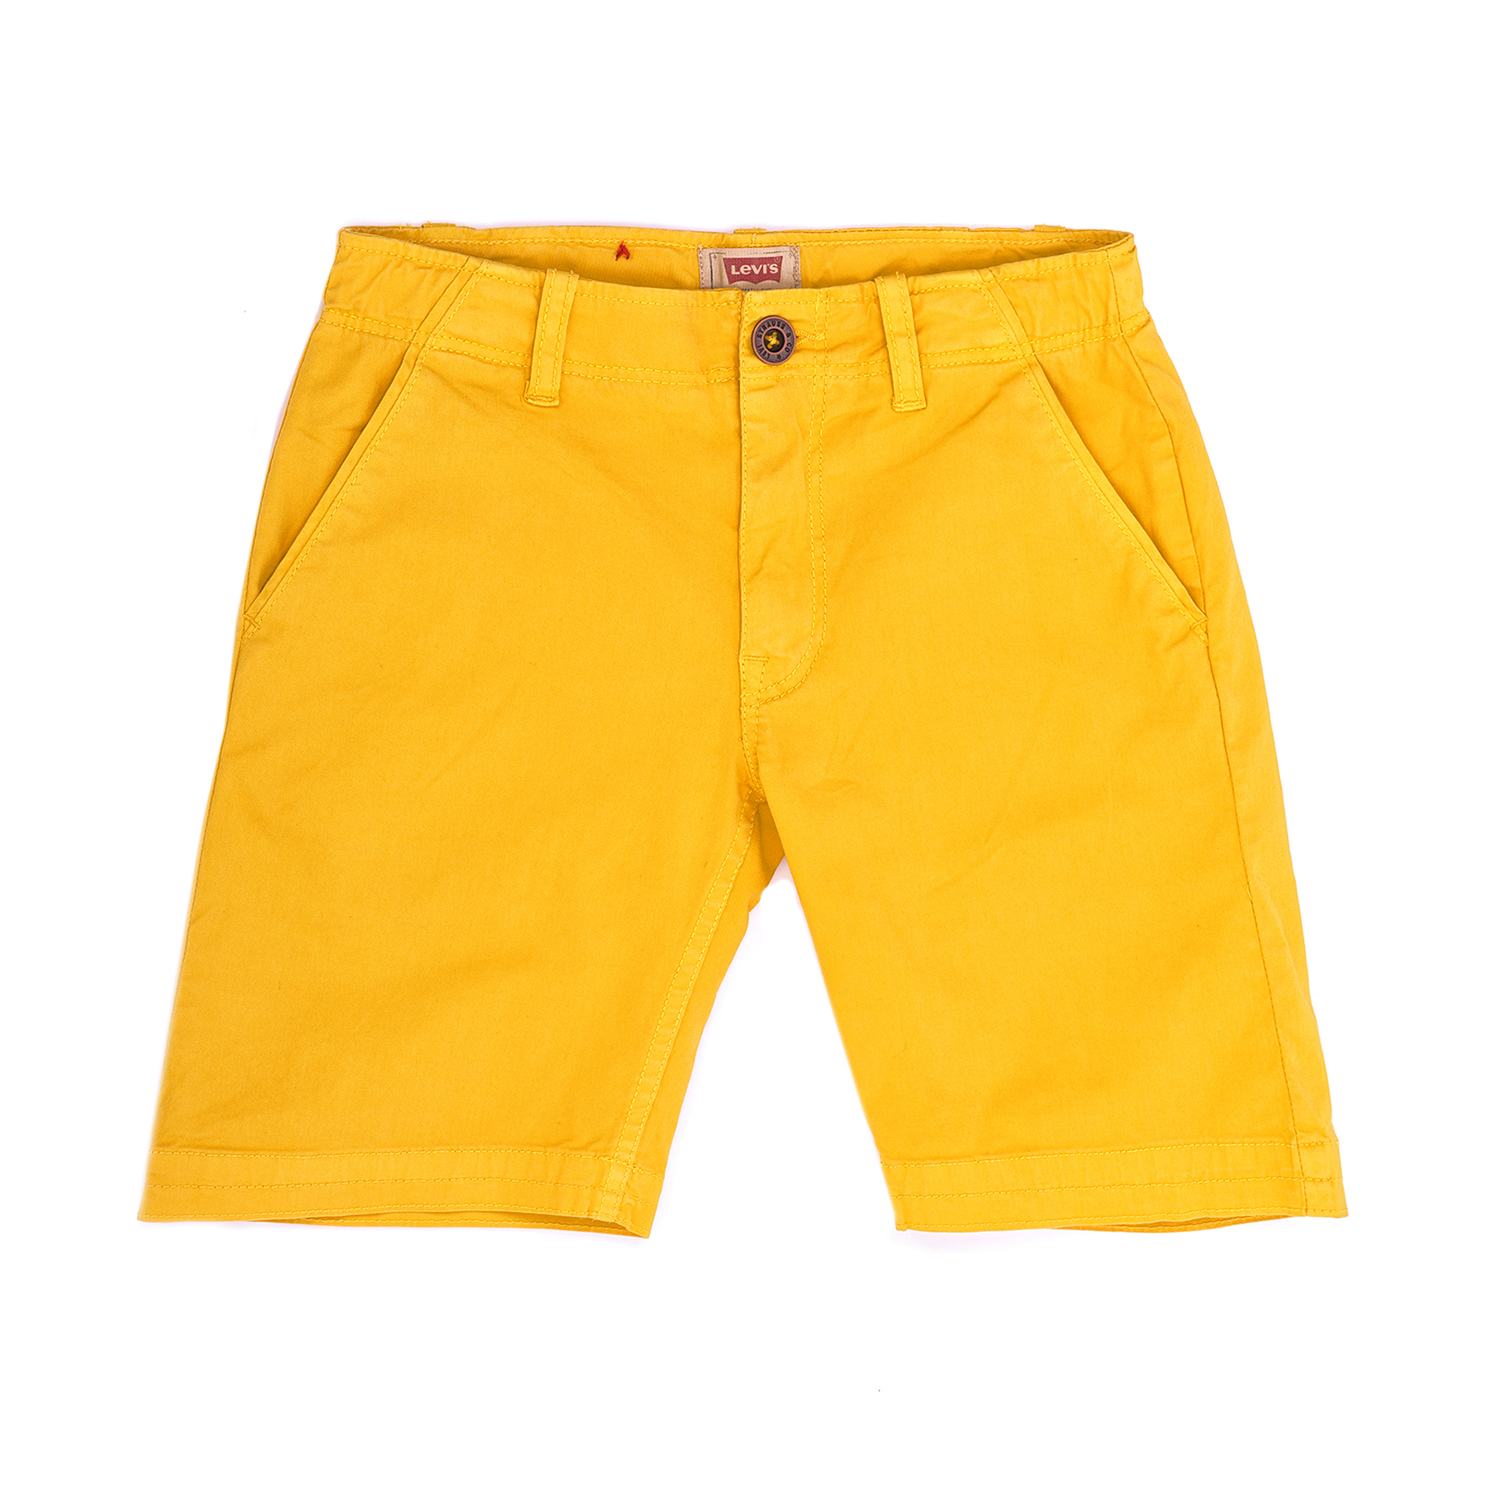 Παιδικά/Boys/Ρούχα/Σορτς-Βερμούδες LEVI'S KIDS - Παιδική βερμούδα LEVI΄S κίτρινη